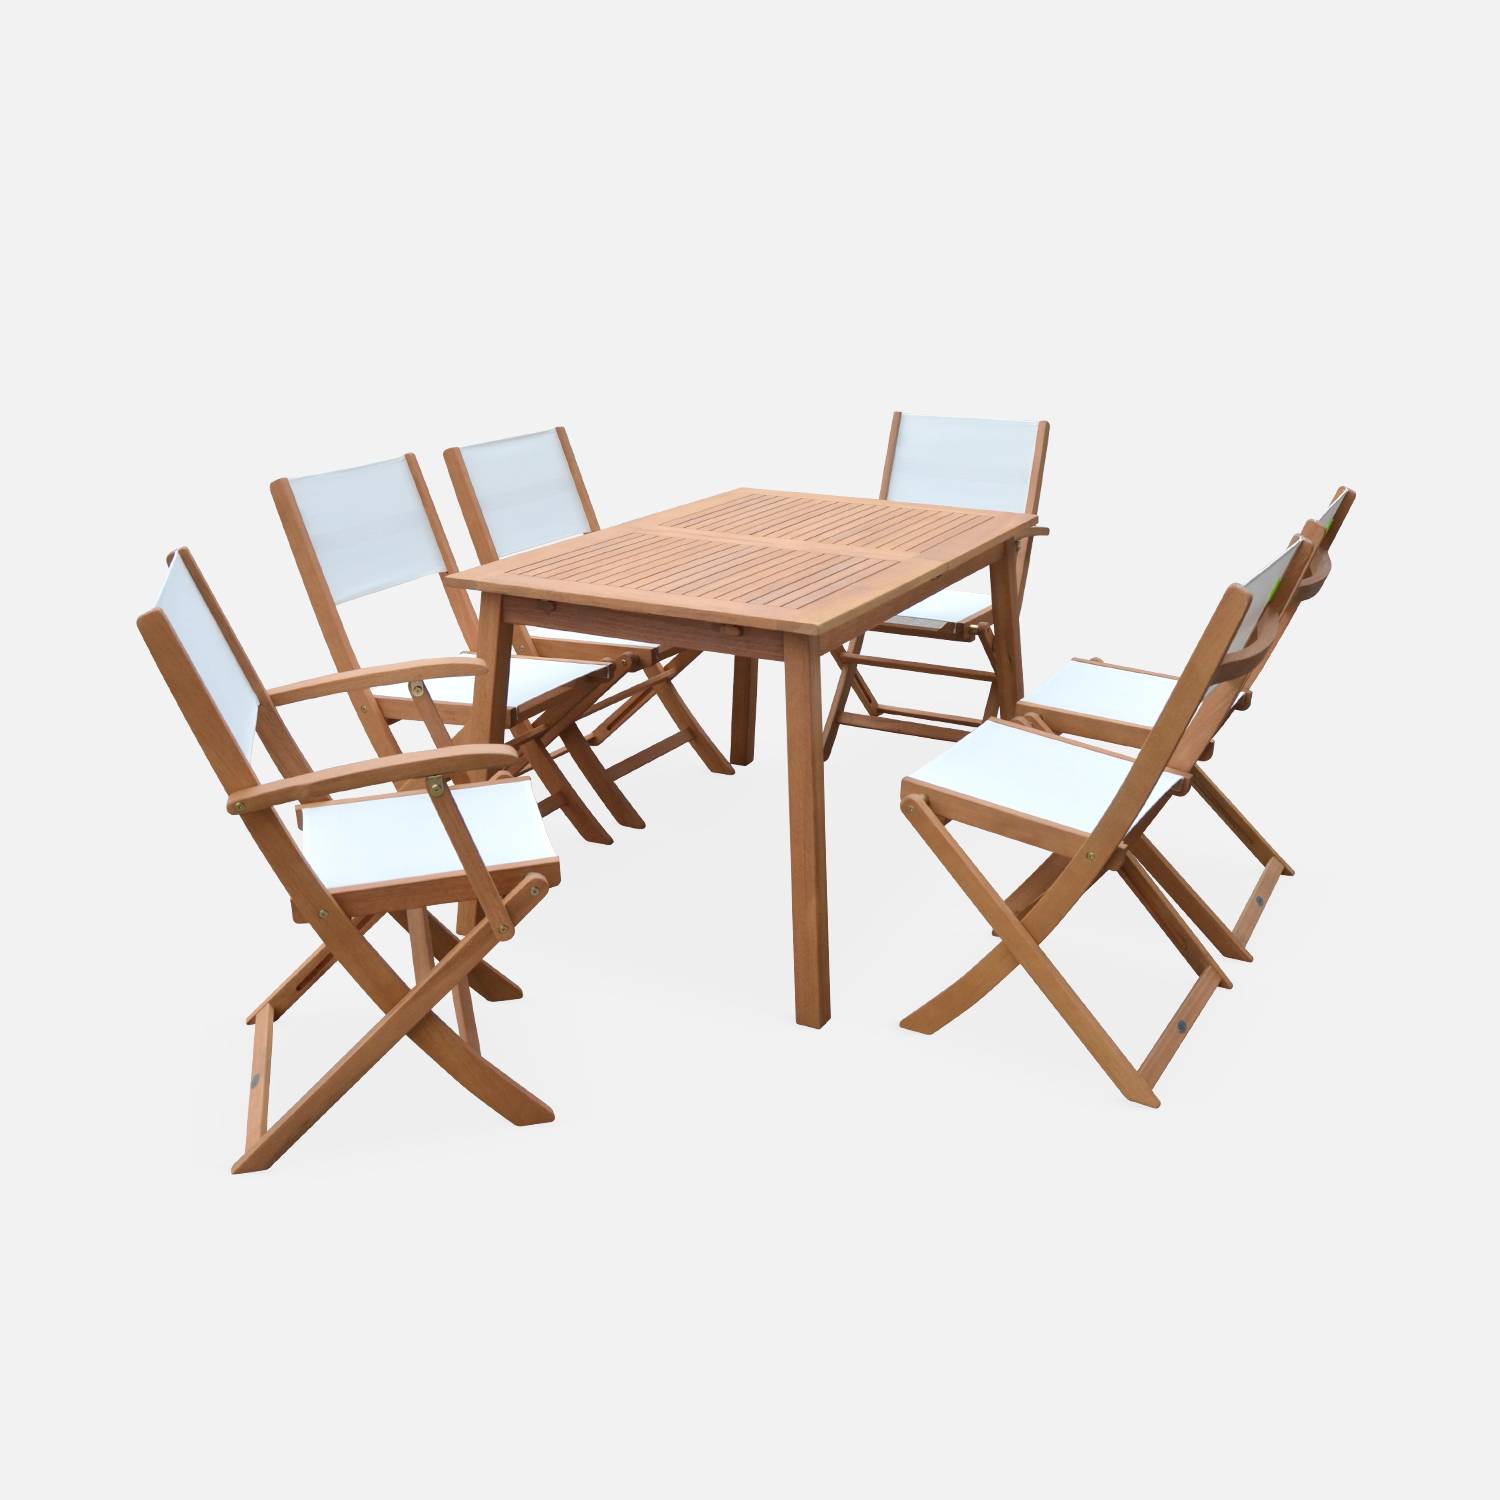 Salotto da giardino estensible in legno - Almeria - Tavolo 120/180cm con prolunga, 2 poltrone e 4 sedie, in legno di eucalipto FSC oliato e textilene bianco Photo4